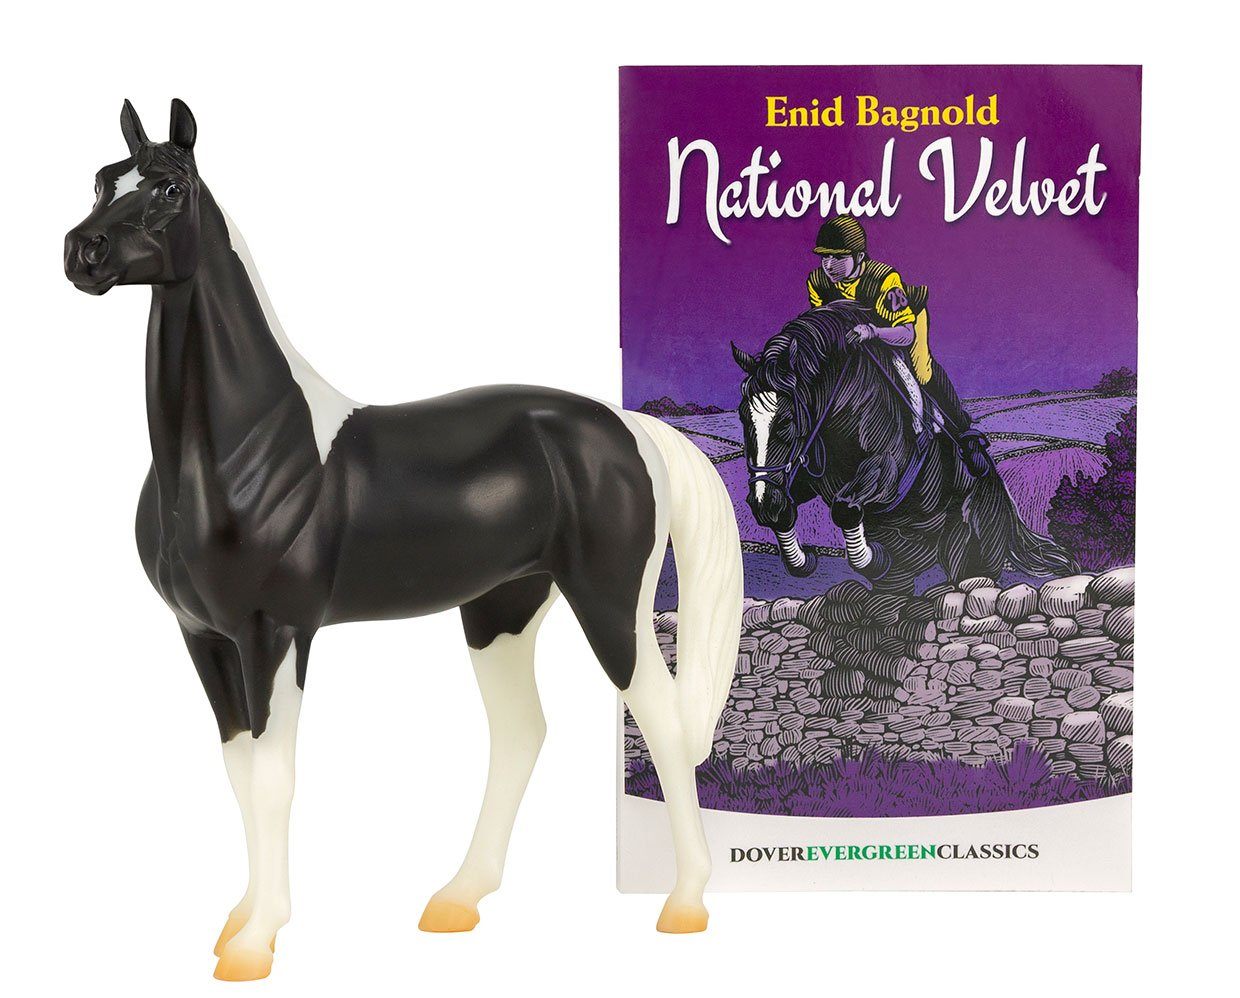 NATIONAL VELVET HORSE & BOOK SET